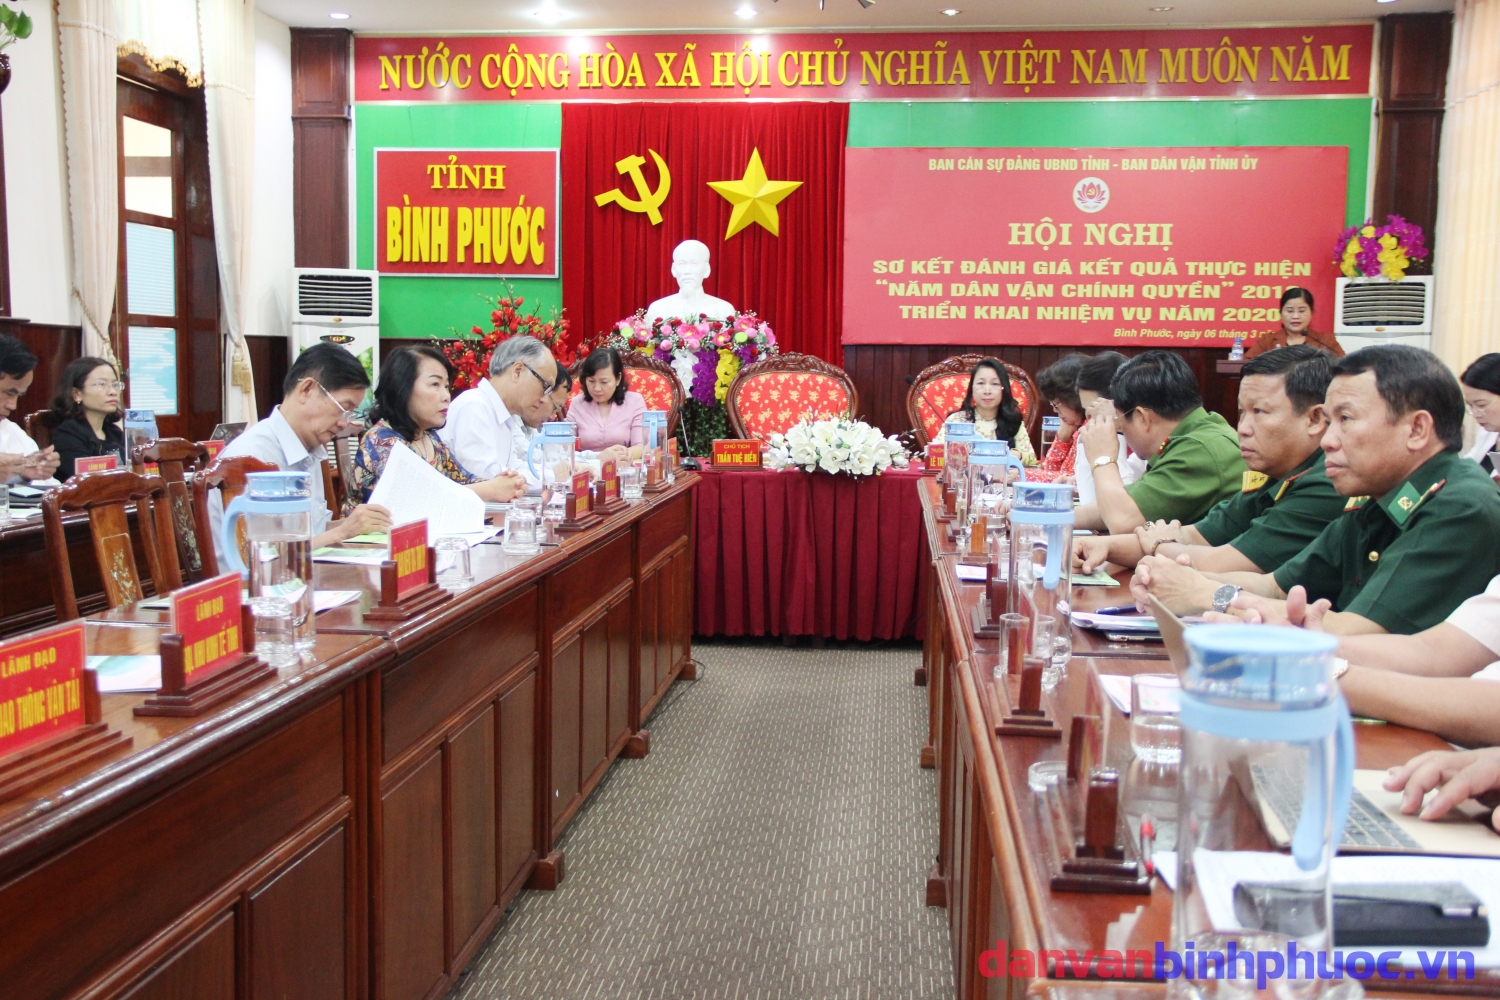 Đồng chí Trần Tuệ Hiền- Chủ tịch UBND tỉnh phát biểu triển khai, thực hiện  nhiệm vụ công tác dân vận của chính quyền trên địa bàn tỉnh năm 2020